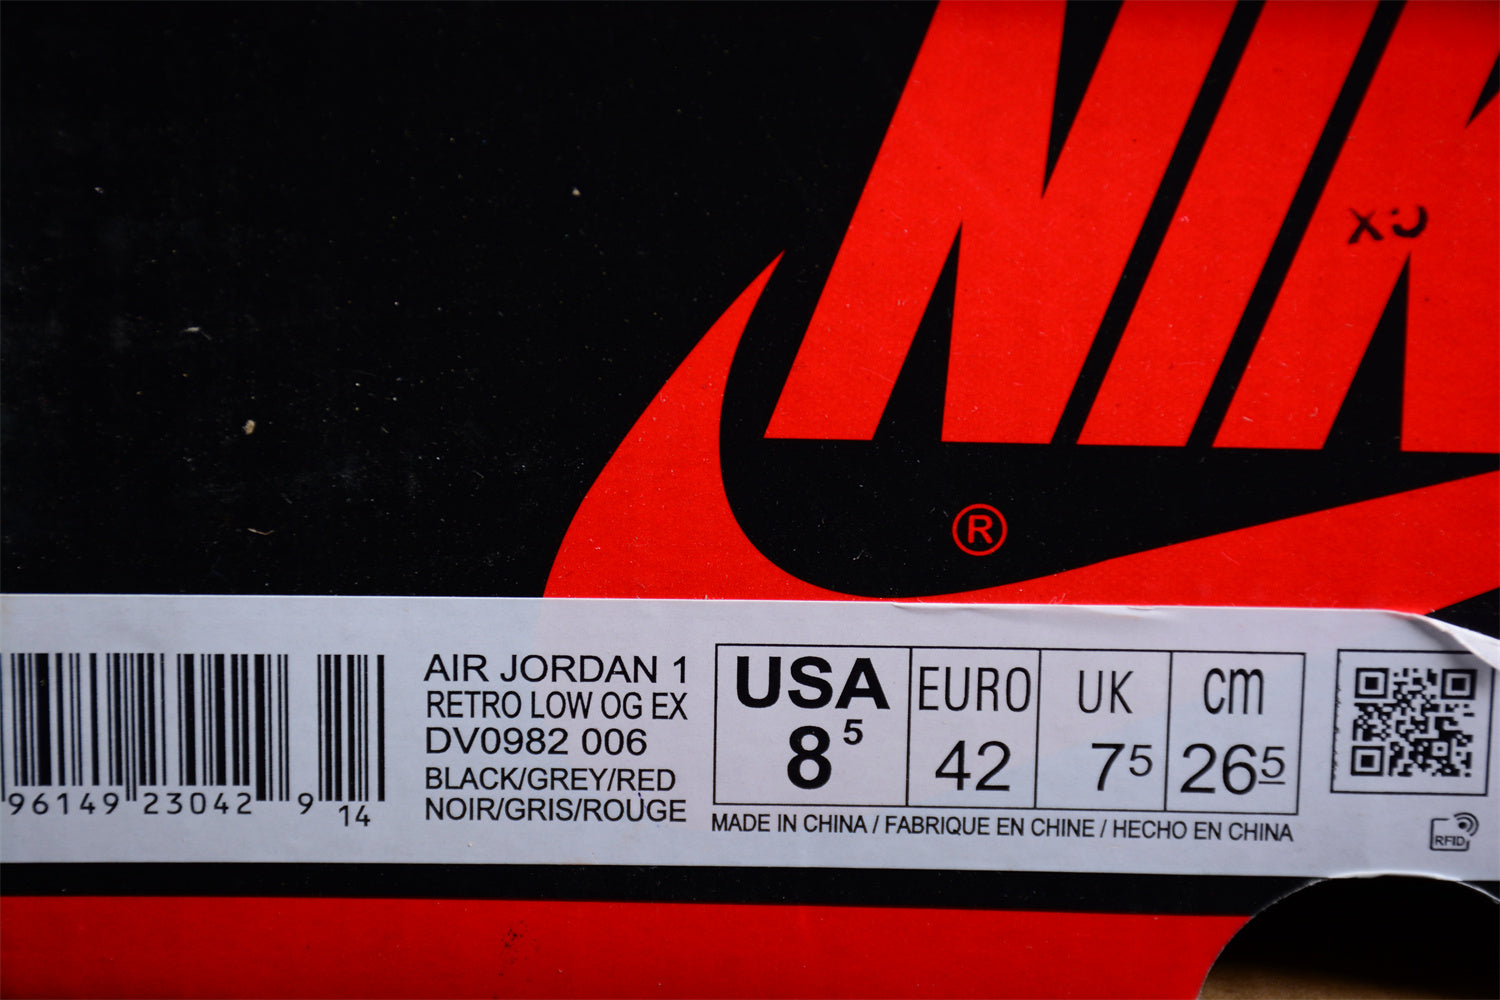 Air Jordan 1 AJ1 Low - Dark Smoke Grey